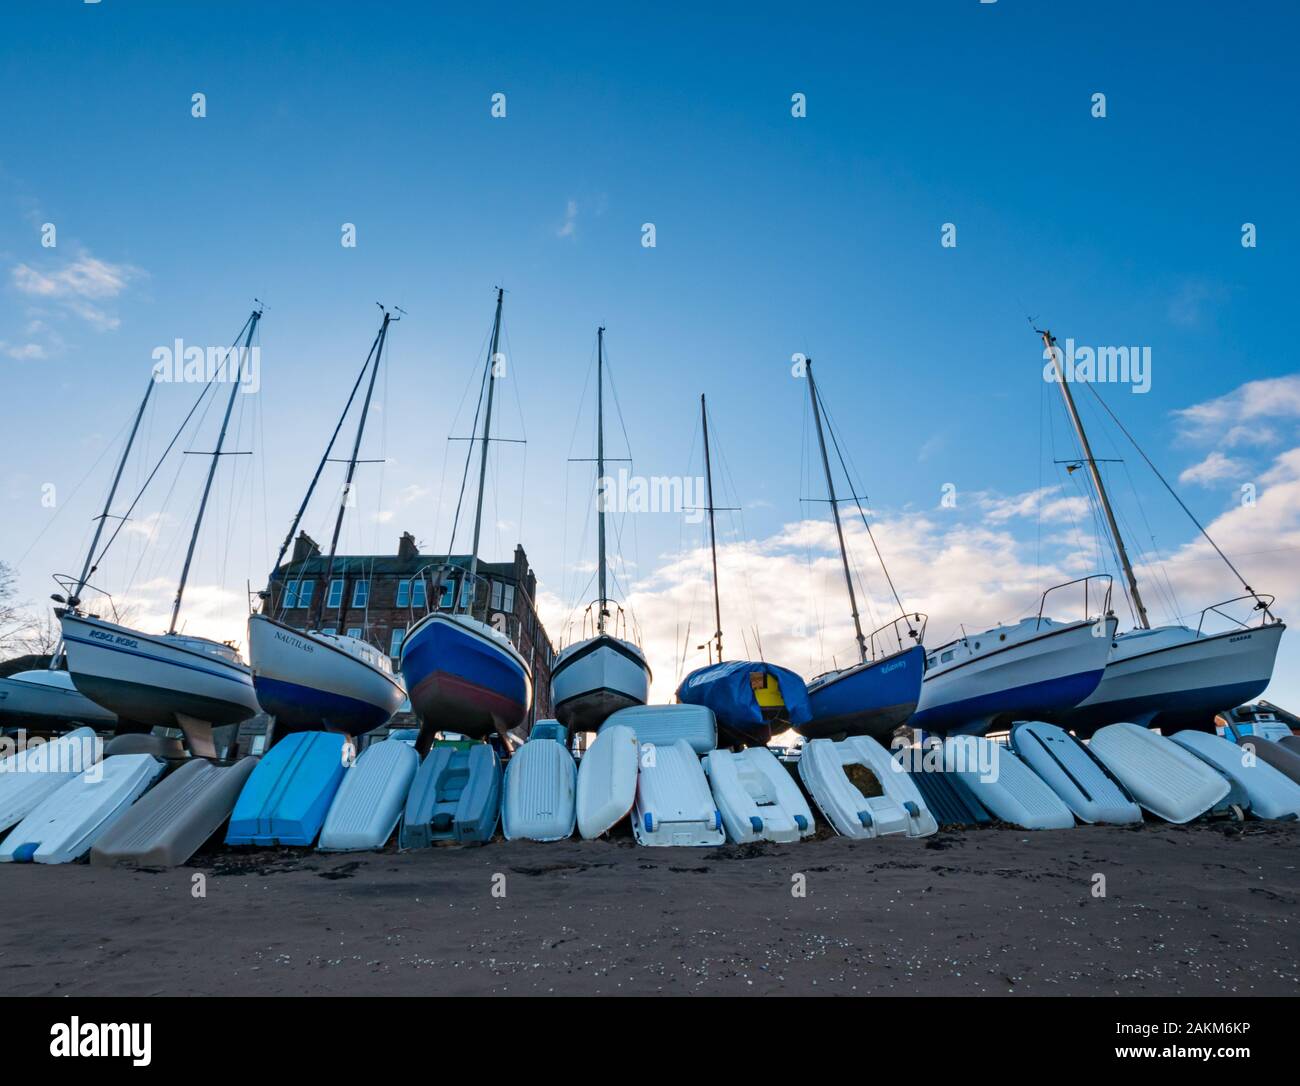 Barcos de vela fuera del agua para el invierno con botes a remo, Fisherrow Harbor, Musselburgh, Scotland, Reino Unido Foto de stock